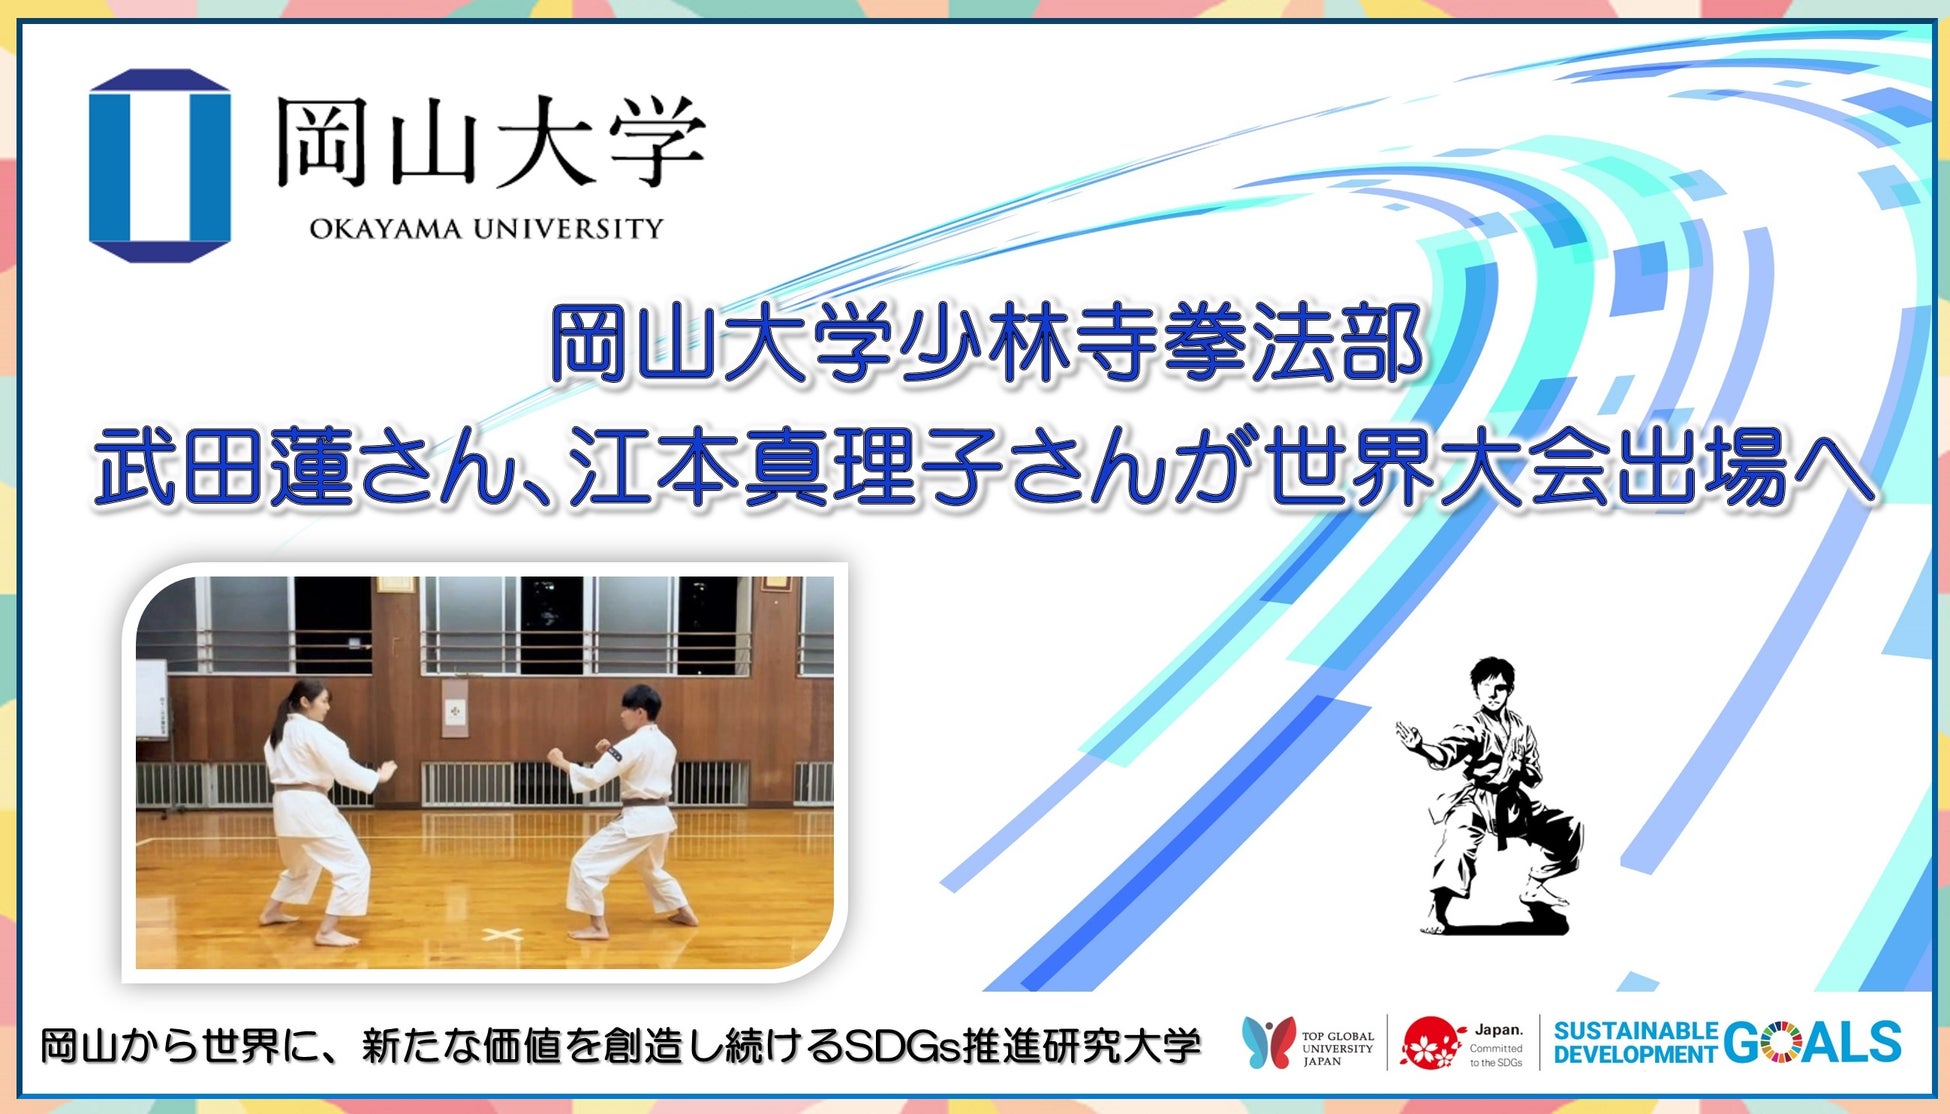 【岡山大学】少林寺拳法部の武田蓮さん、江本真理子さんが世界大会出場へ